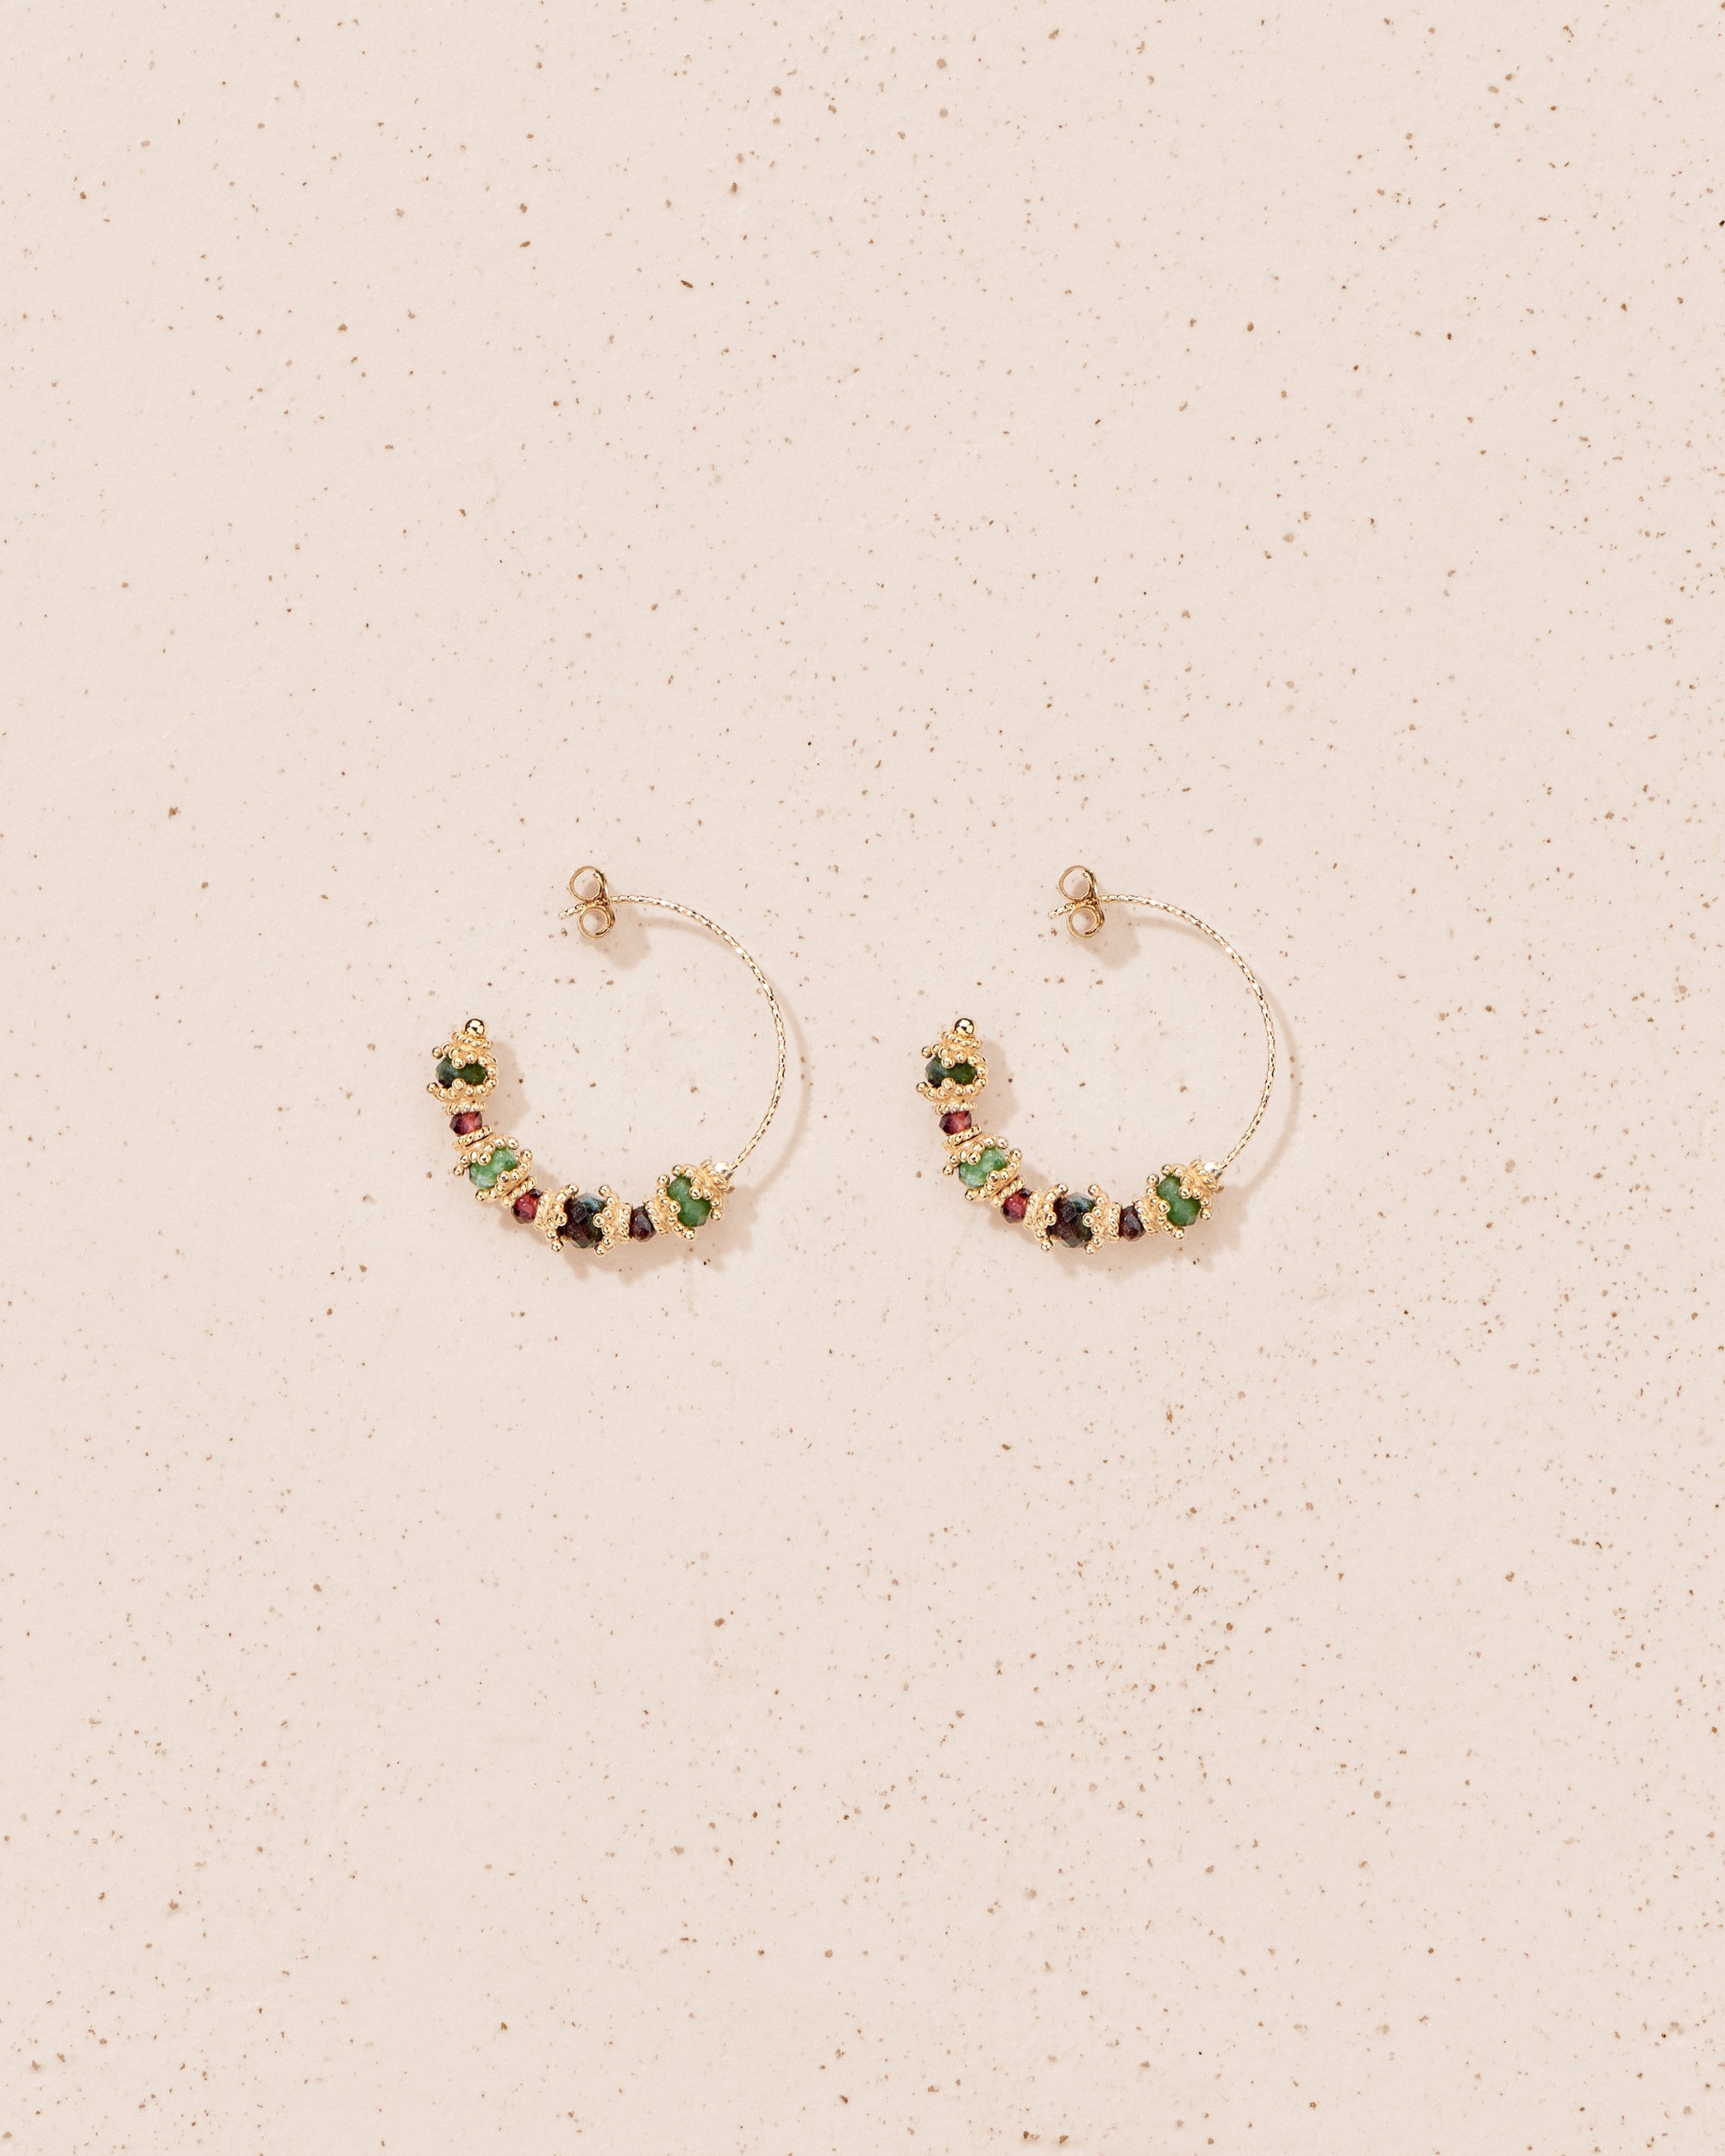 Sriphala earrings